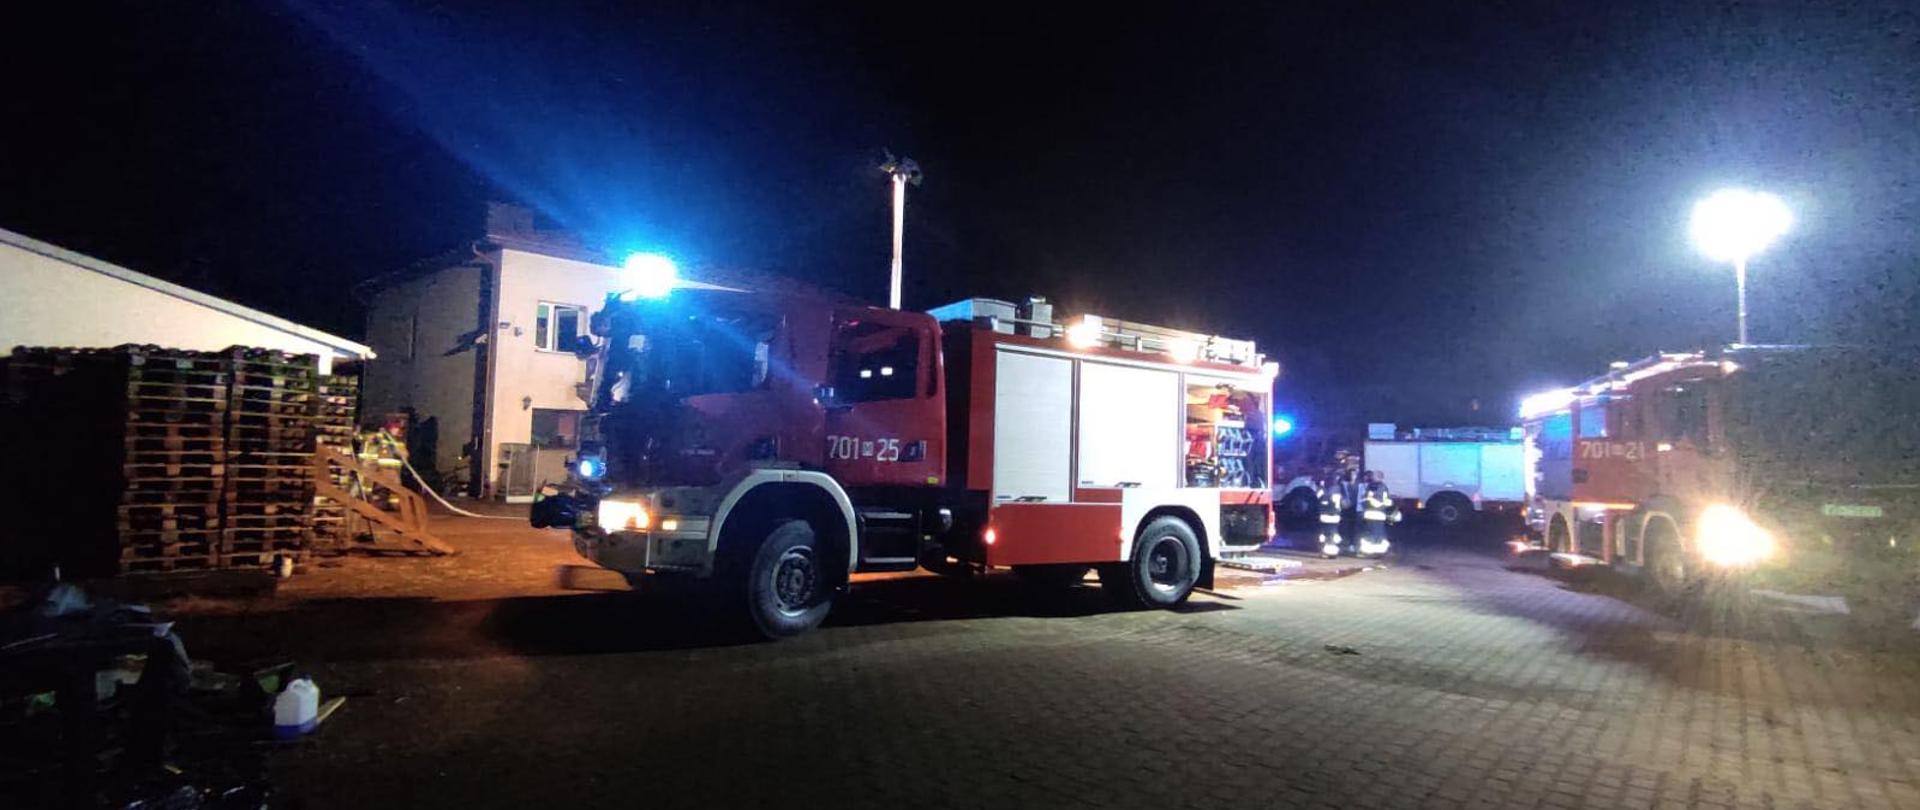 Zdjęcie przedstawia ciężki samochód scania, jest ciemno, w tle widać strażaków oraz inny samochód strażacki